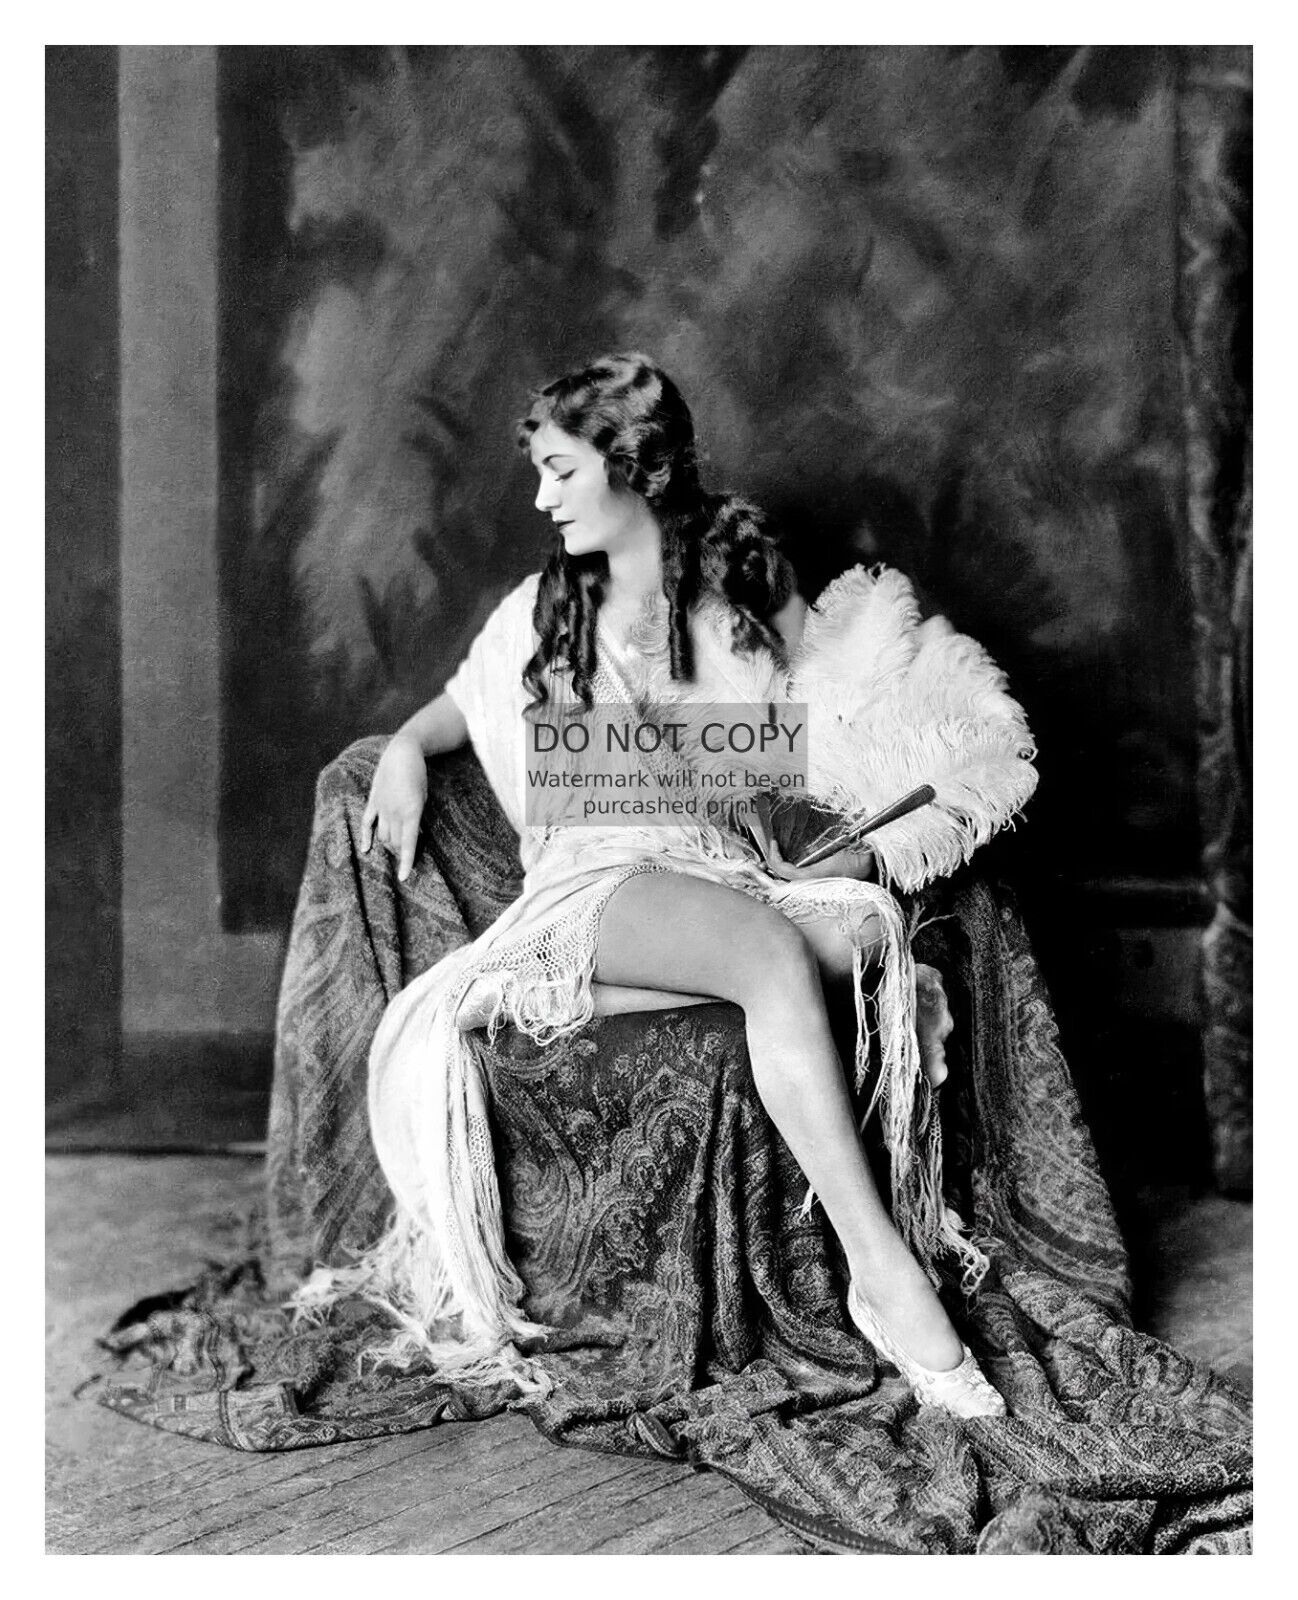 SEXY ZIEGFELD GIRL MODEL UNIDENTIFIED 1923 8X10 PHOTO